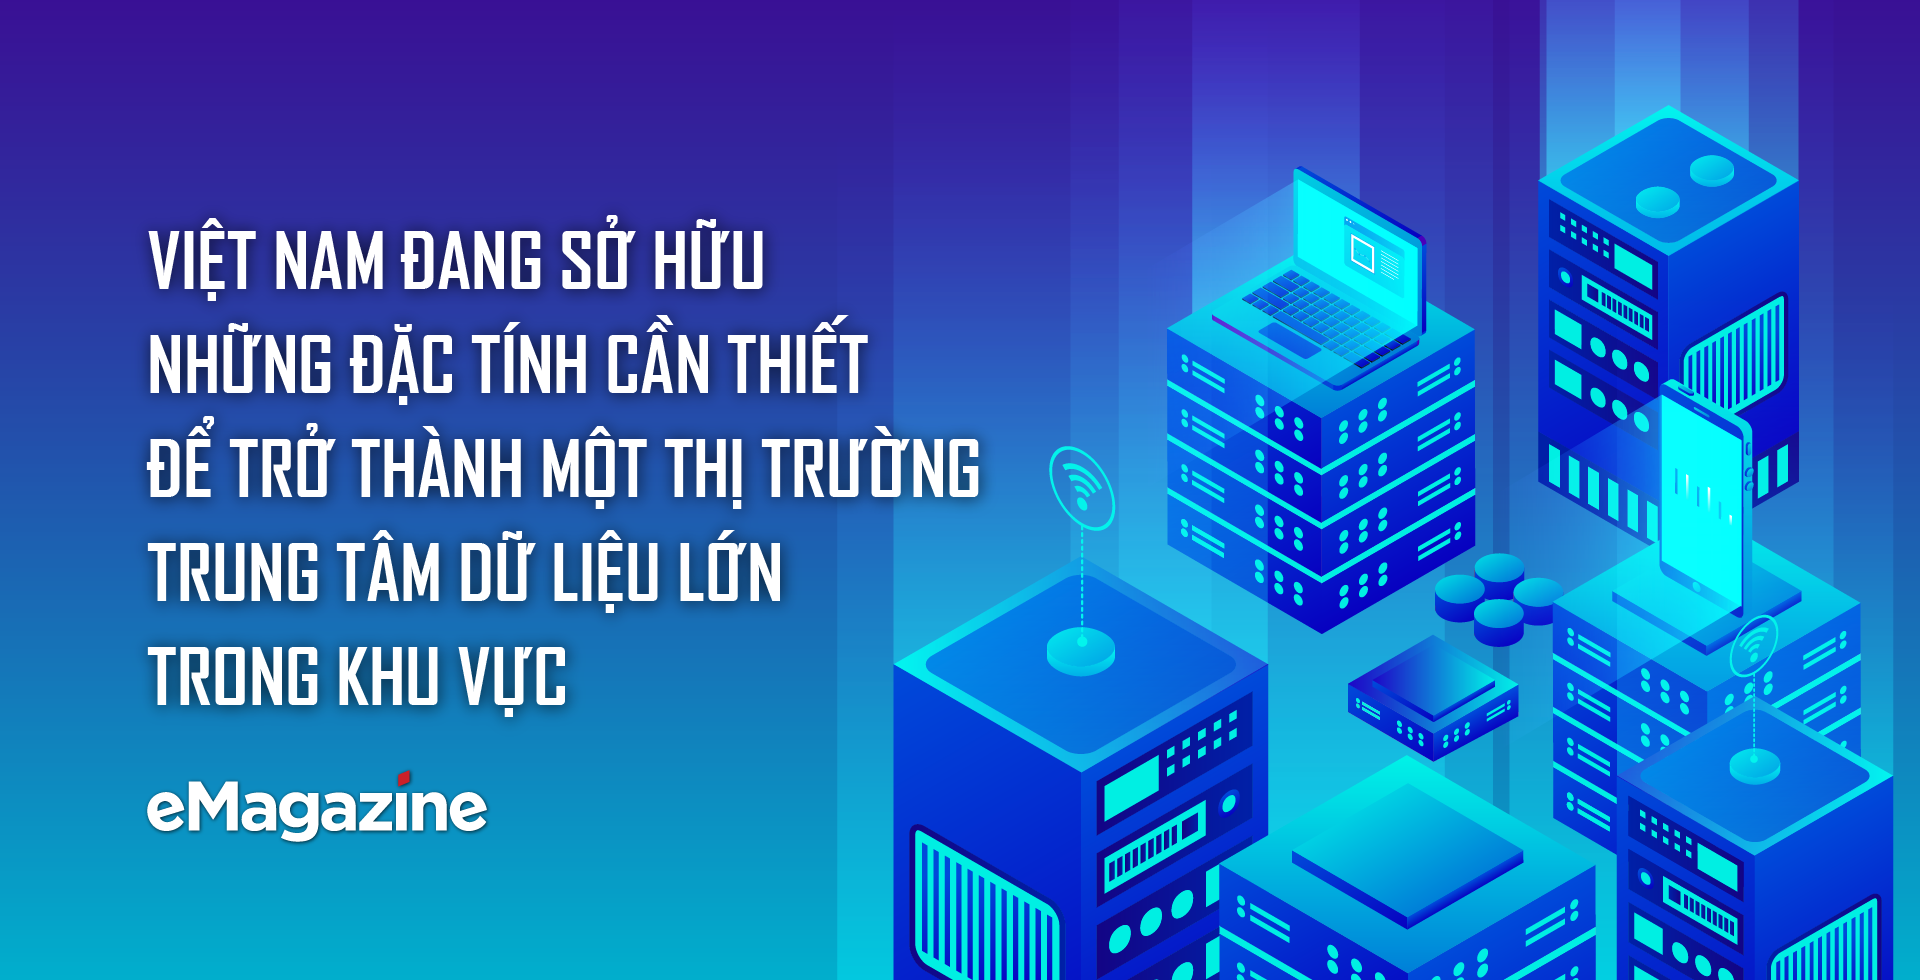 Việt Nam đang sở hữu những đặc tính cần thiết để trở thành một thị trường trung tâm dữ liệu lớn trong khu vực - Ảnh 1